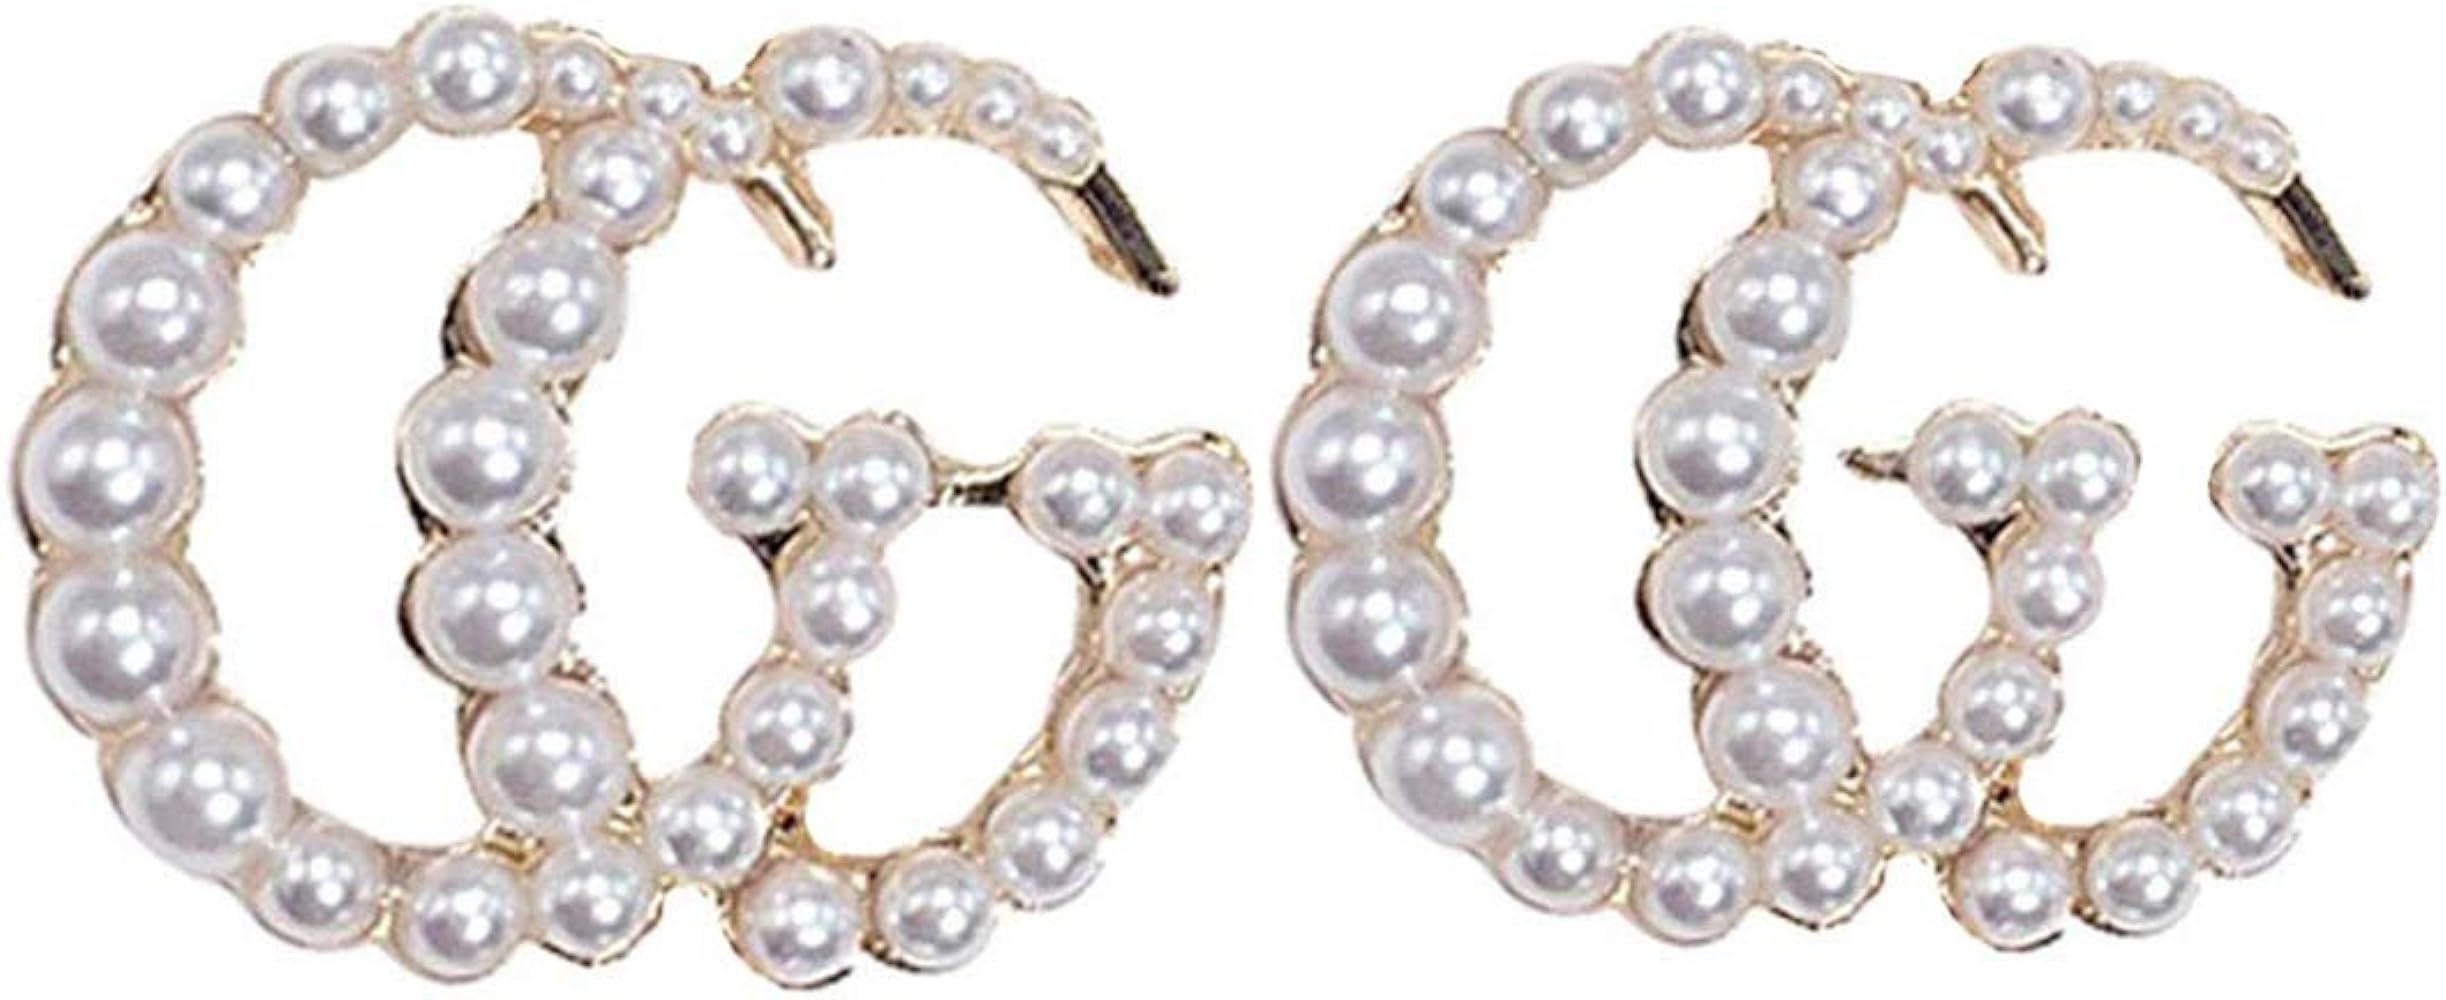 Pearl Hoop Earrings for Women Fashion Hypoallergenic Girls Pearl Earrings Drop Dangle Earrings Je... | Amazon (CA)